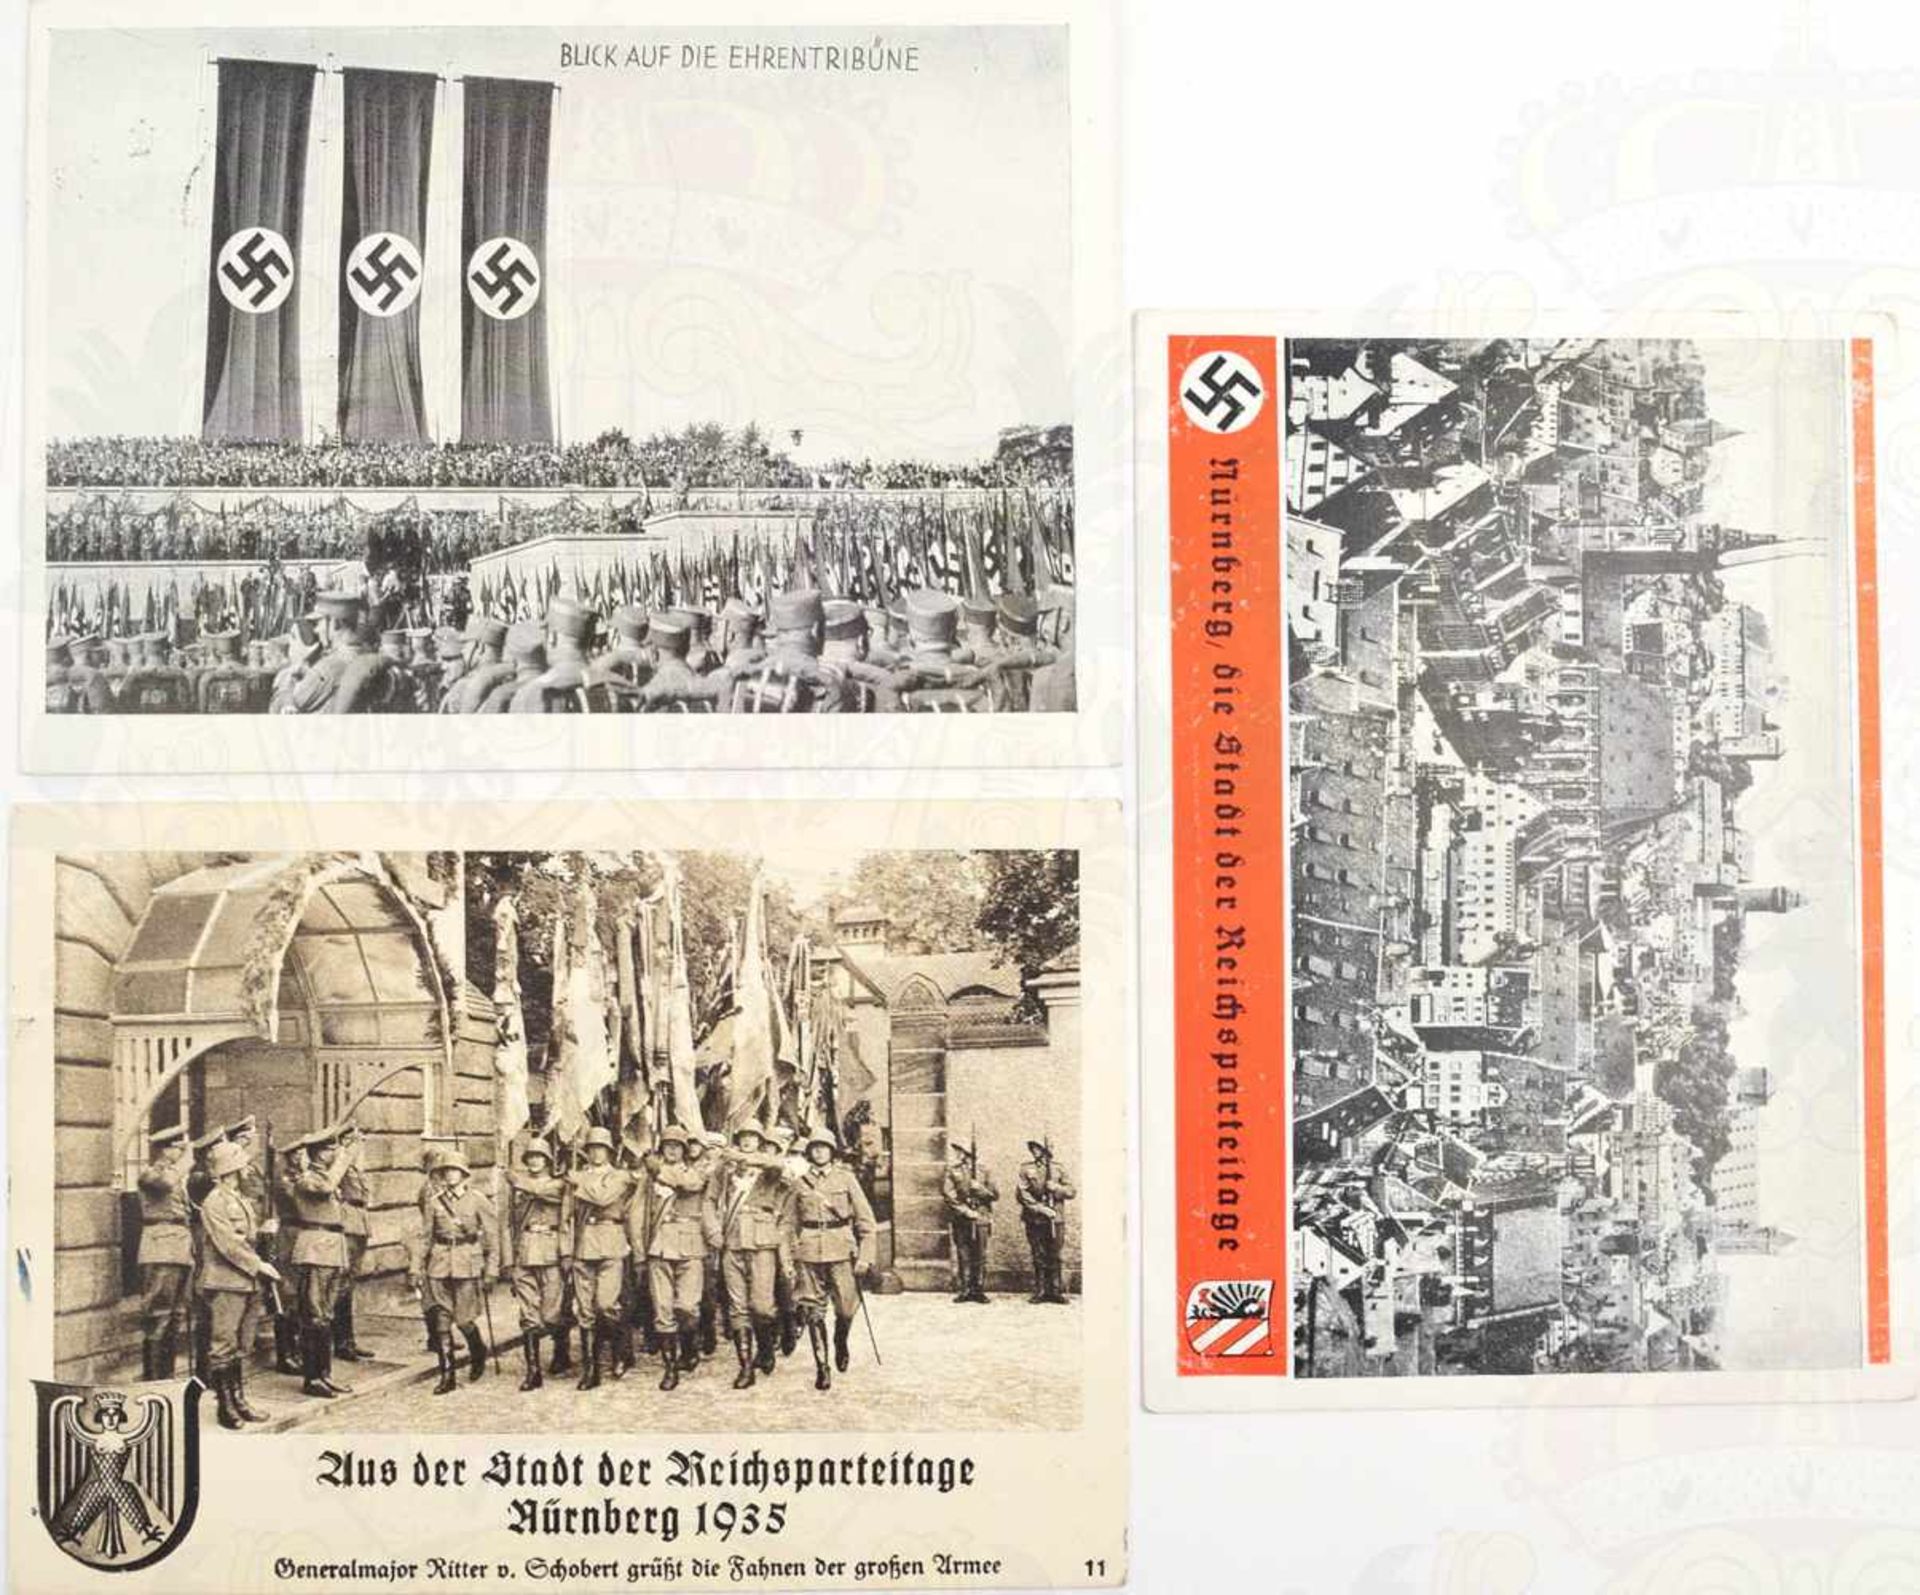 3 AK REICHSPARTEITAGE NÜRNBERG, 1934 u. 2x 1935, Gen.Major Ritter von Schobert bei Flaggenparade